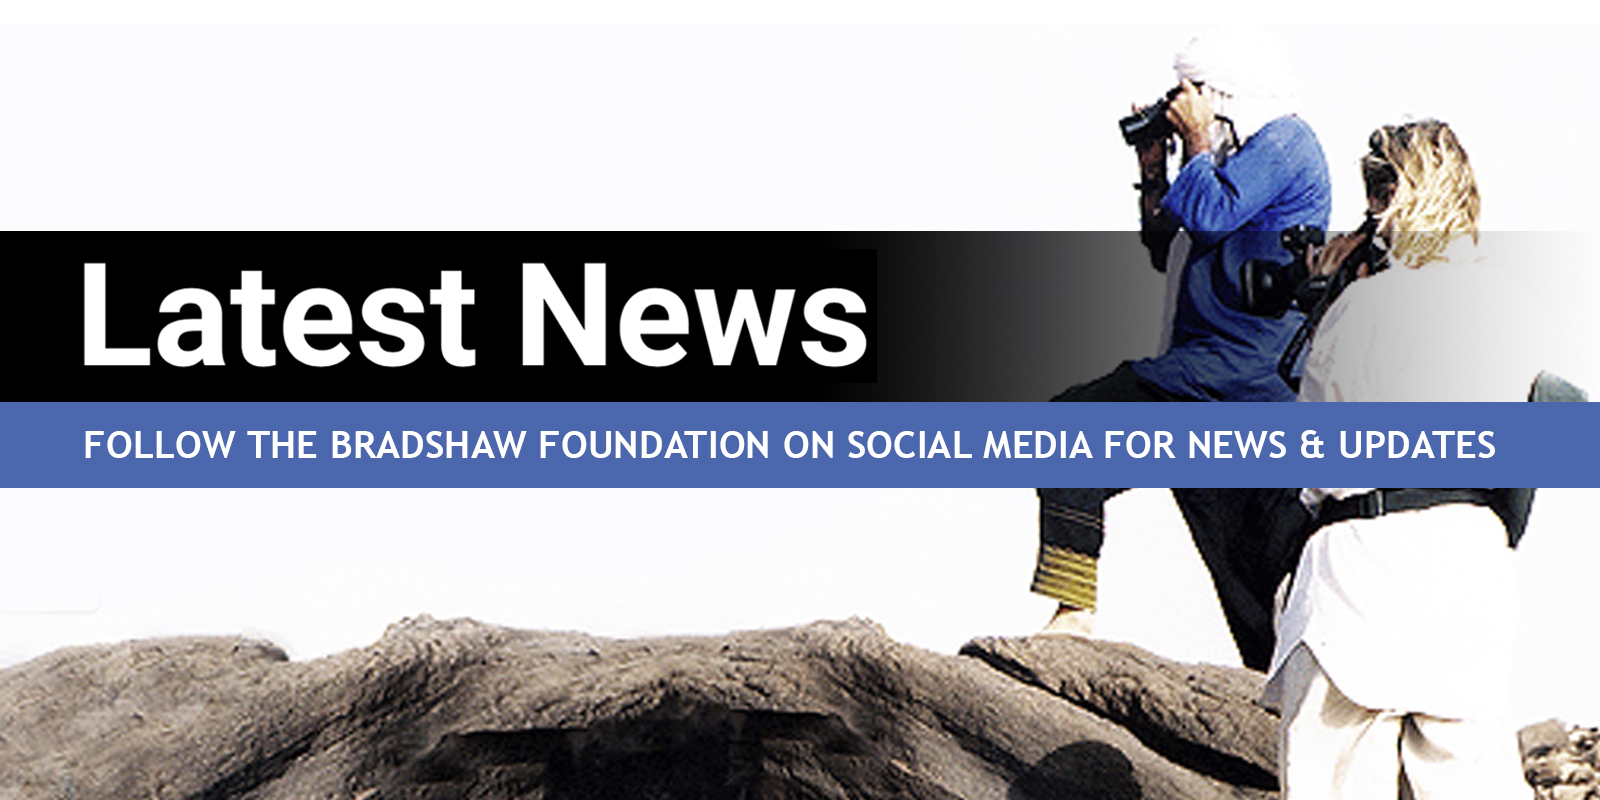 Bradshaw Foundation Latest News